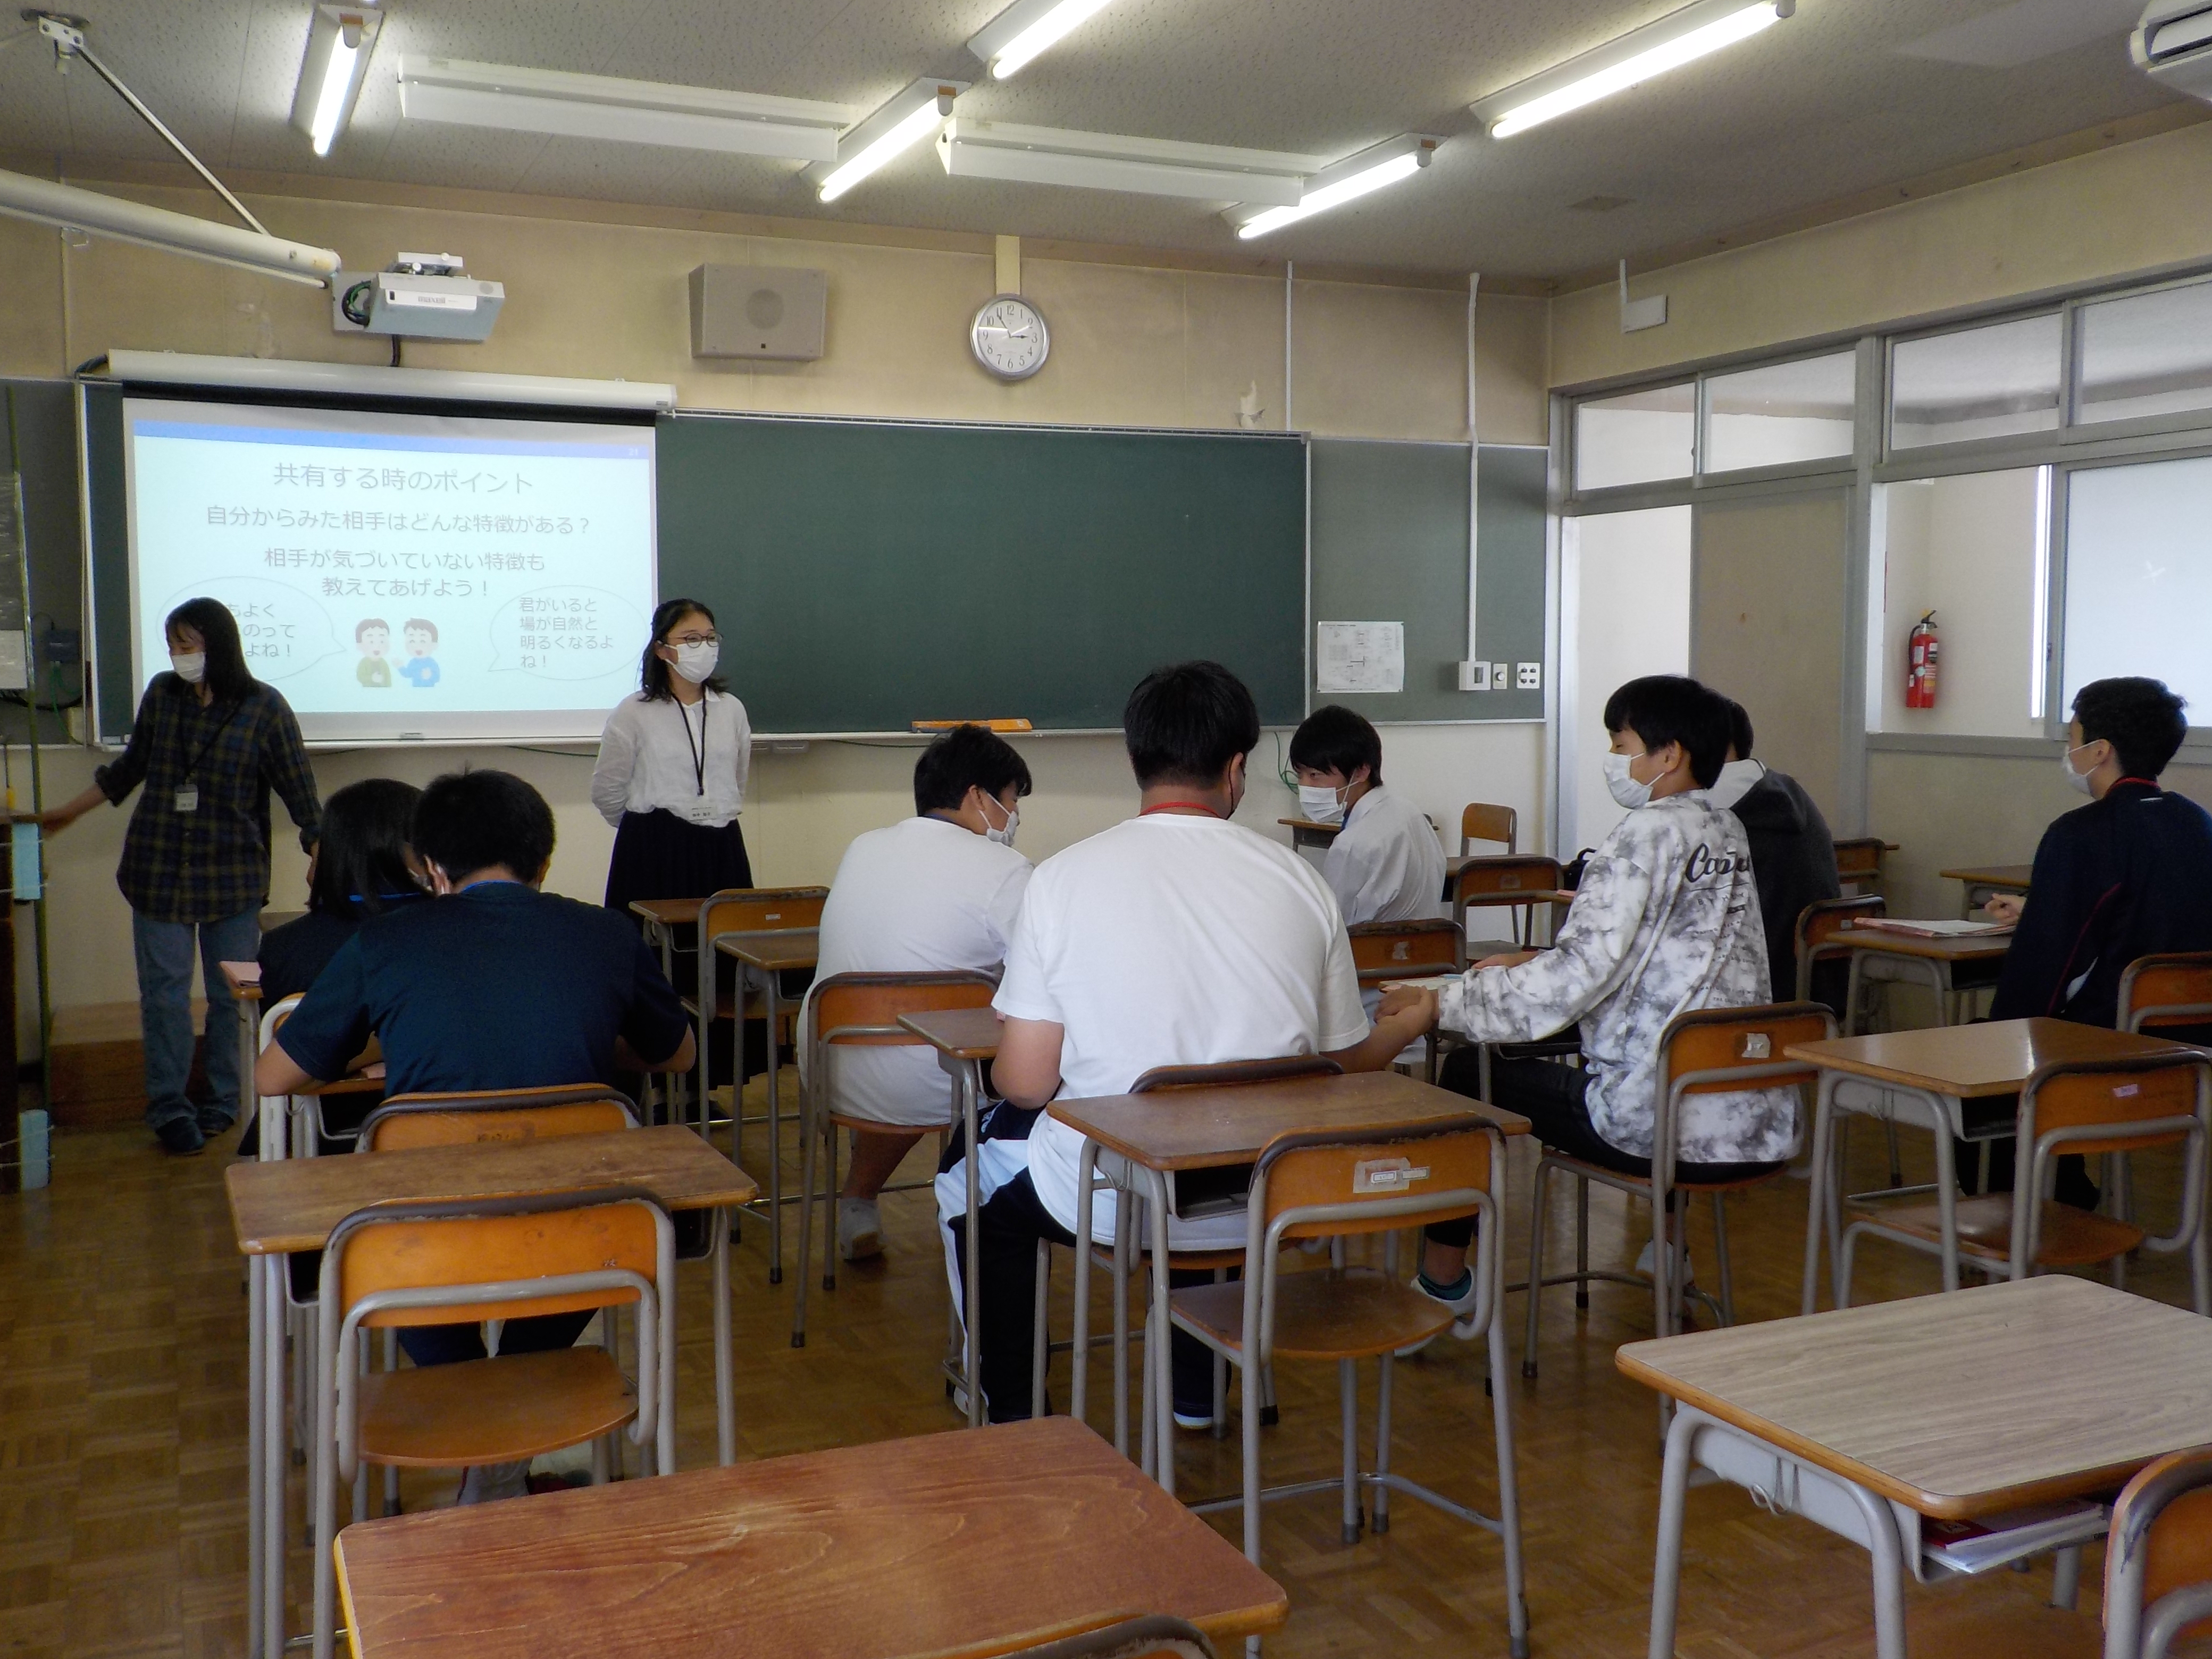 【開催報告】長野県箕輪進修高校にて「自分クッキング」のワークショップを実施しました